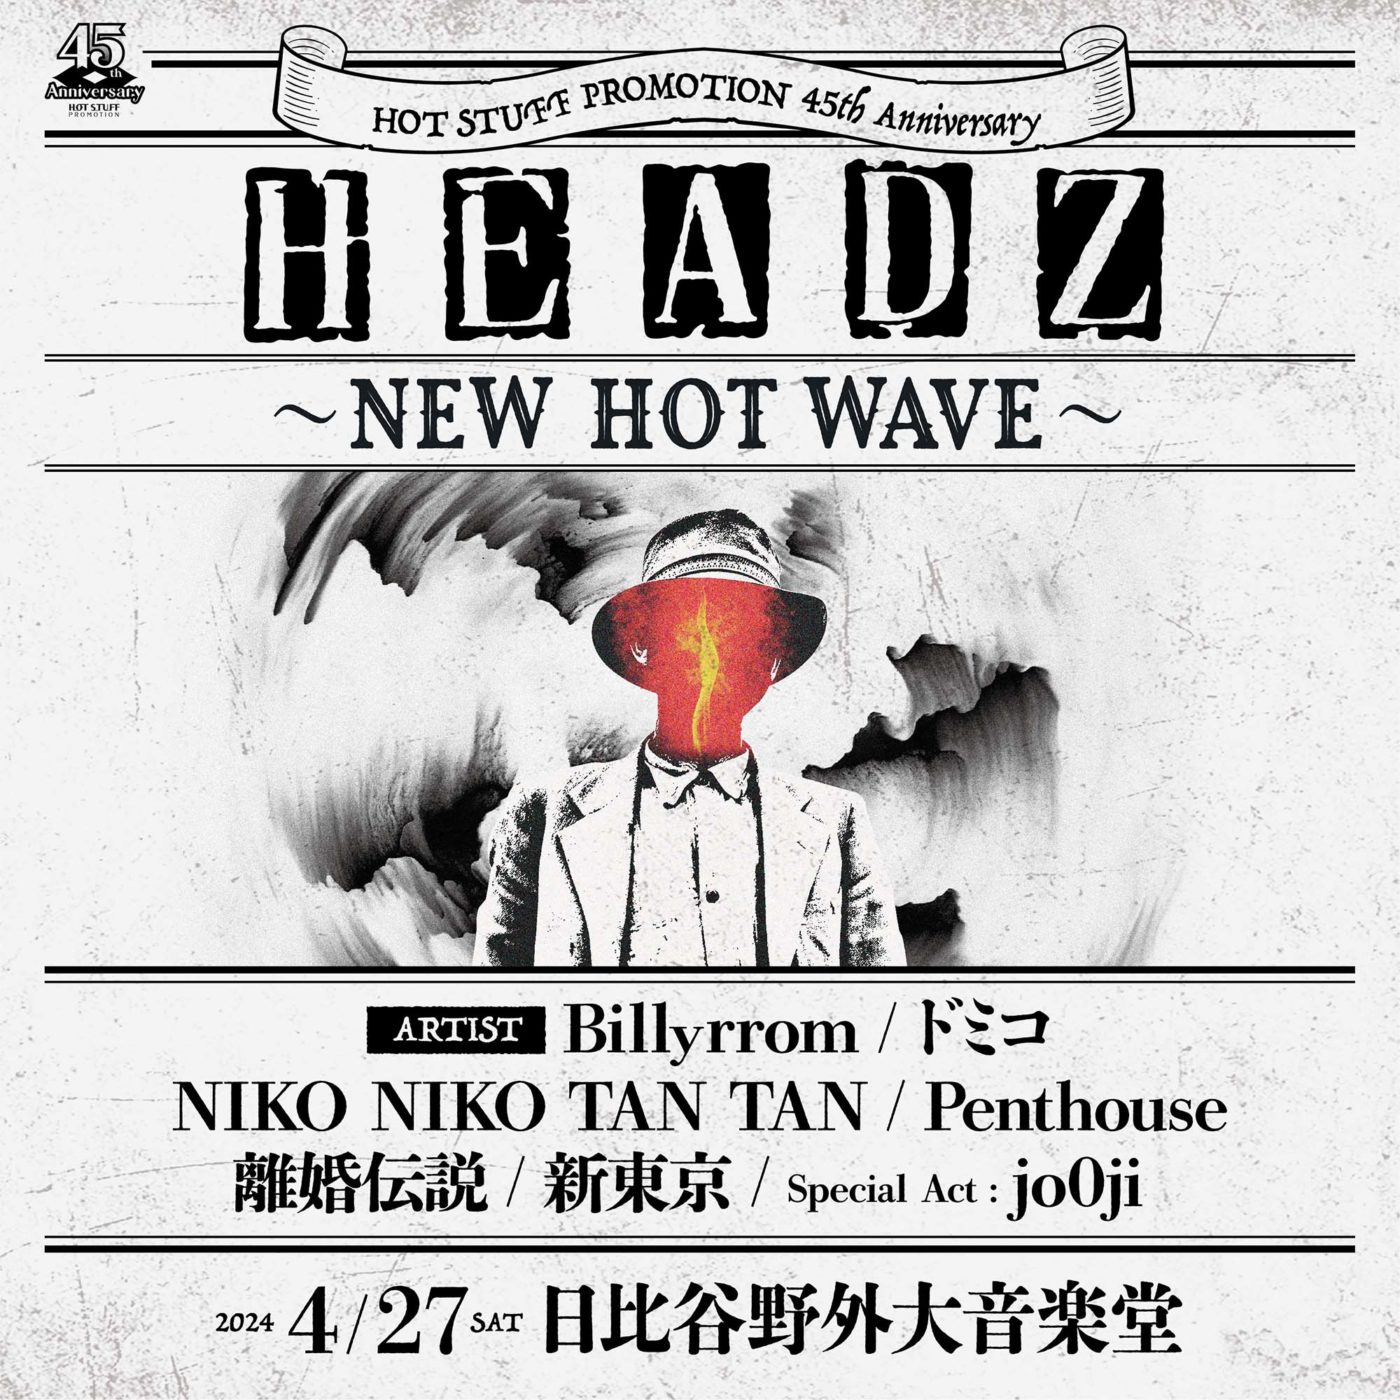 4月27日(土)HOT STUFF 45th Anniversary HEADZ 〜NEW HOT WAVE〜 at 